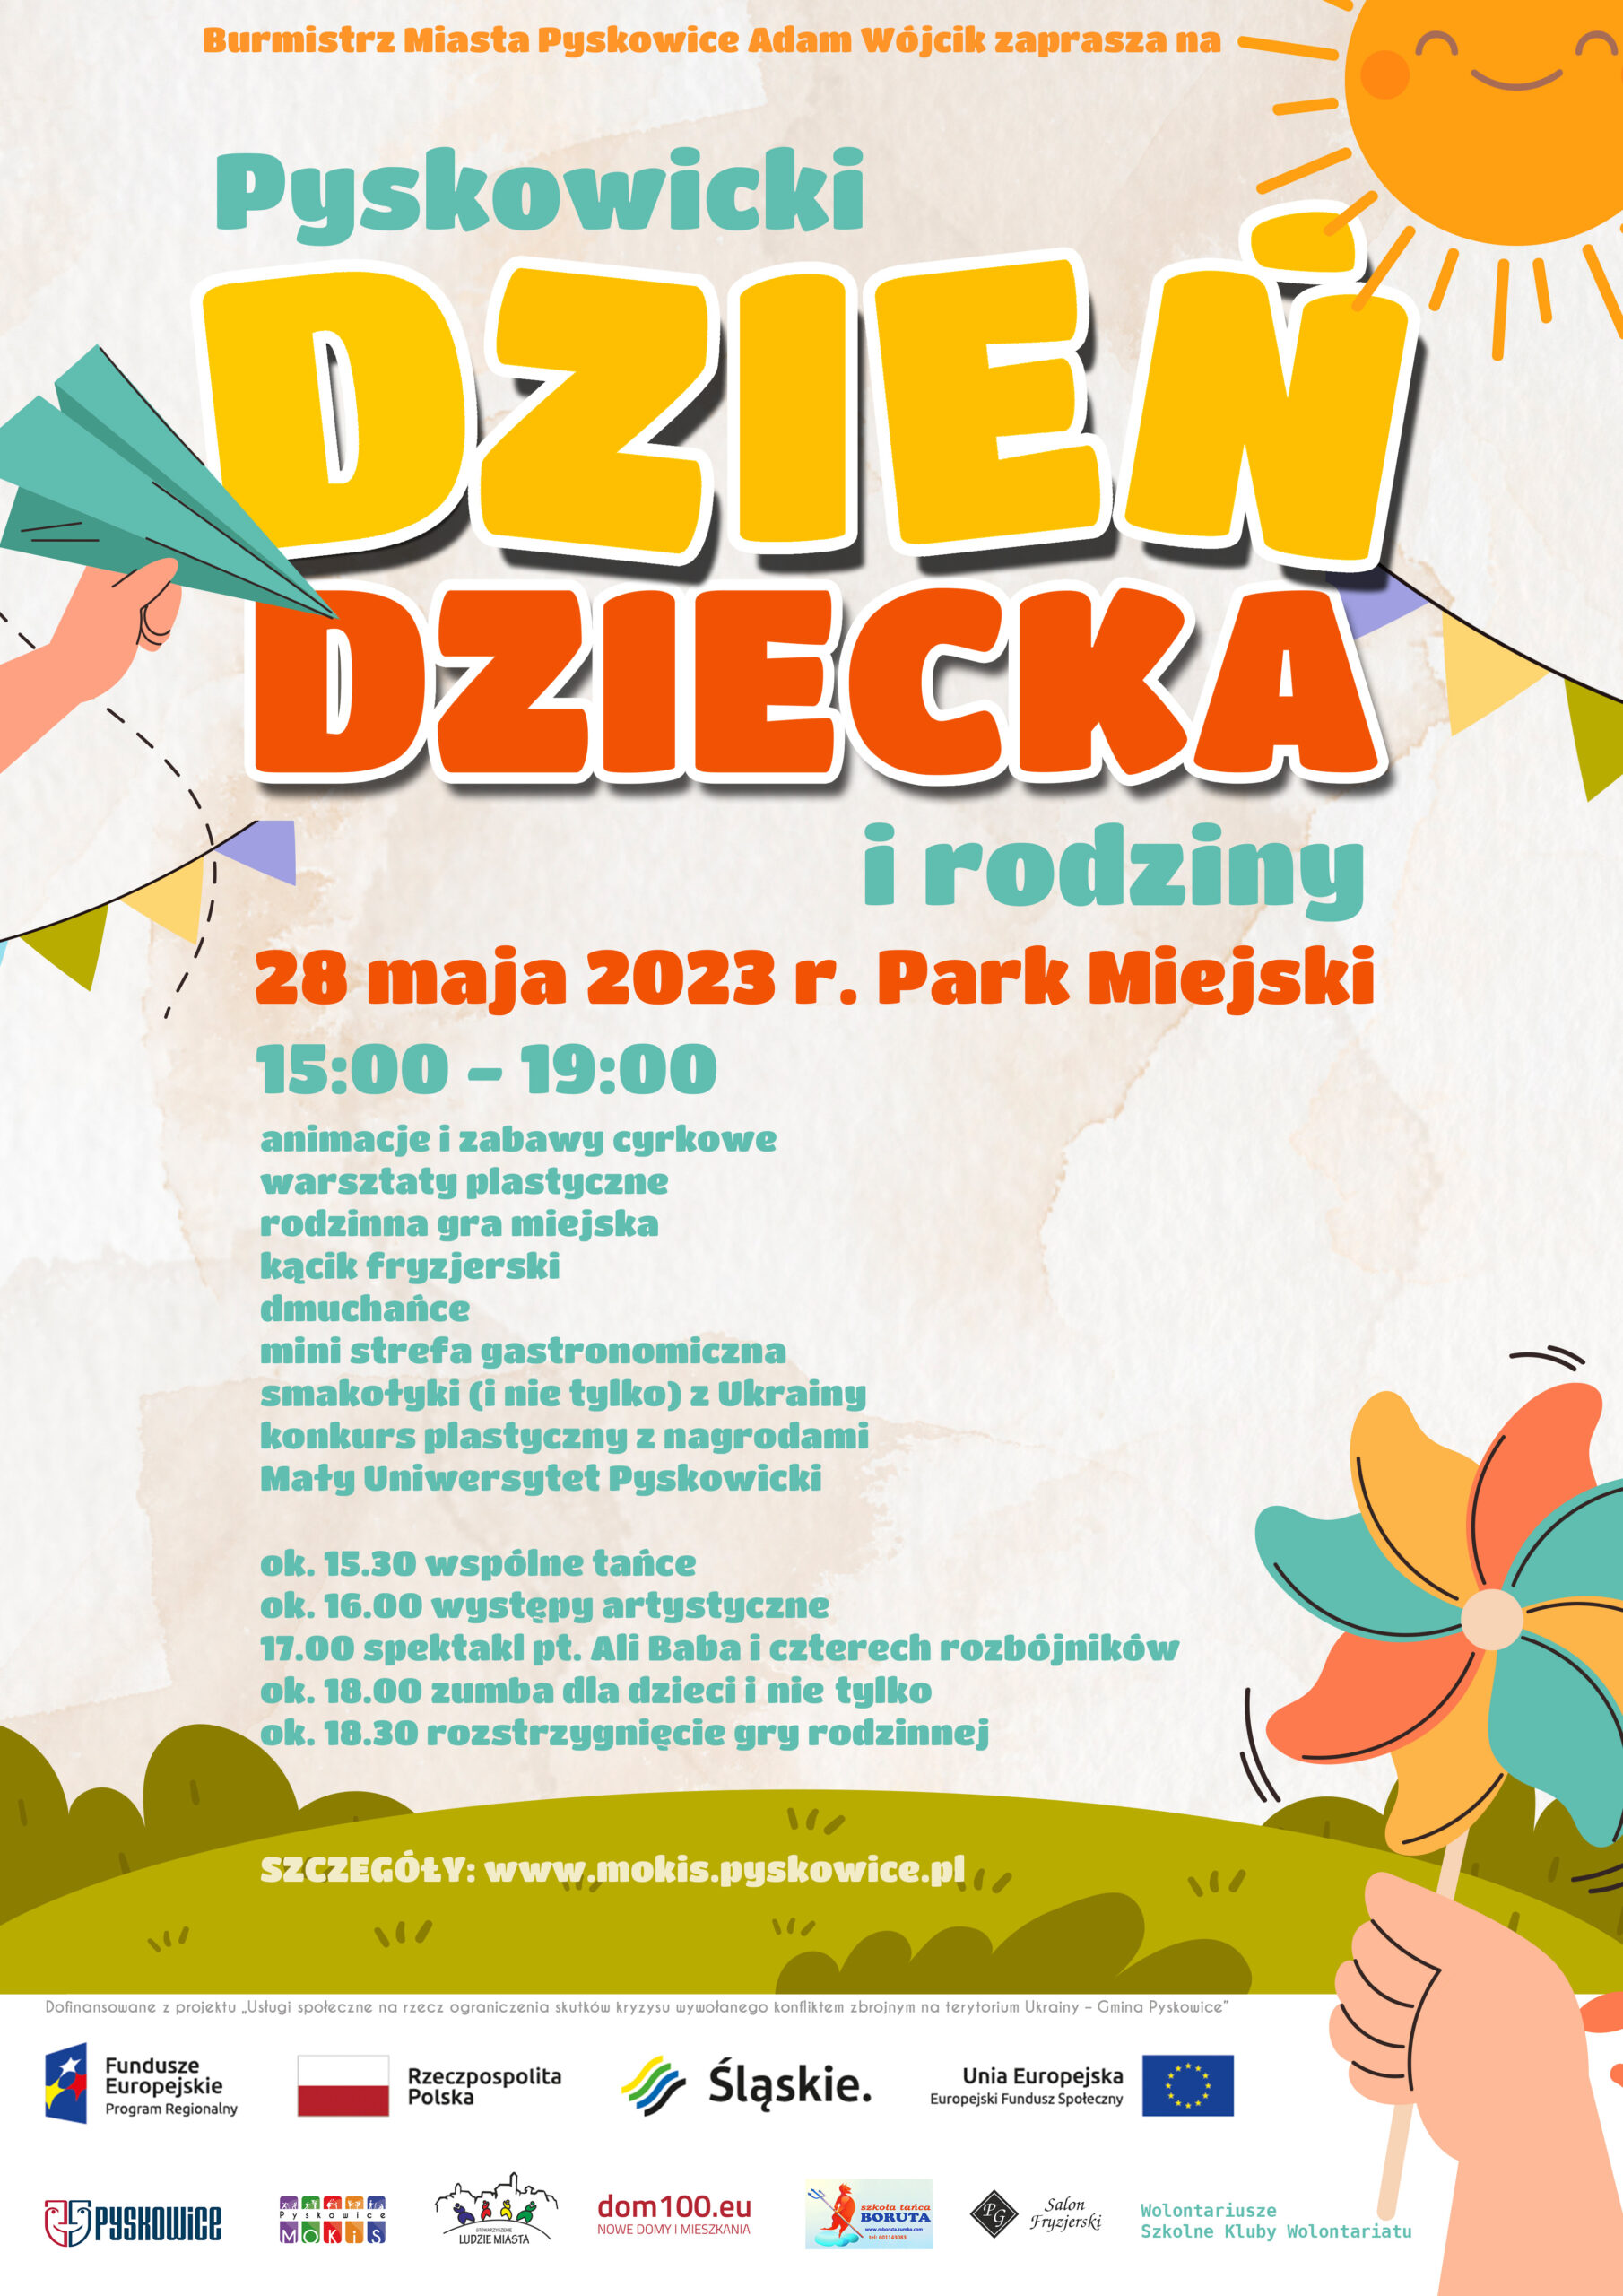 Plakat promujący pyskowicki Dzień Dziecka i rodziny 28 maja 2023r. w Parku Miejskim w Pyskowicach